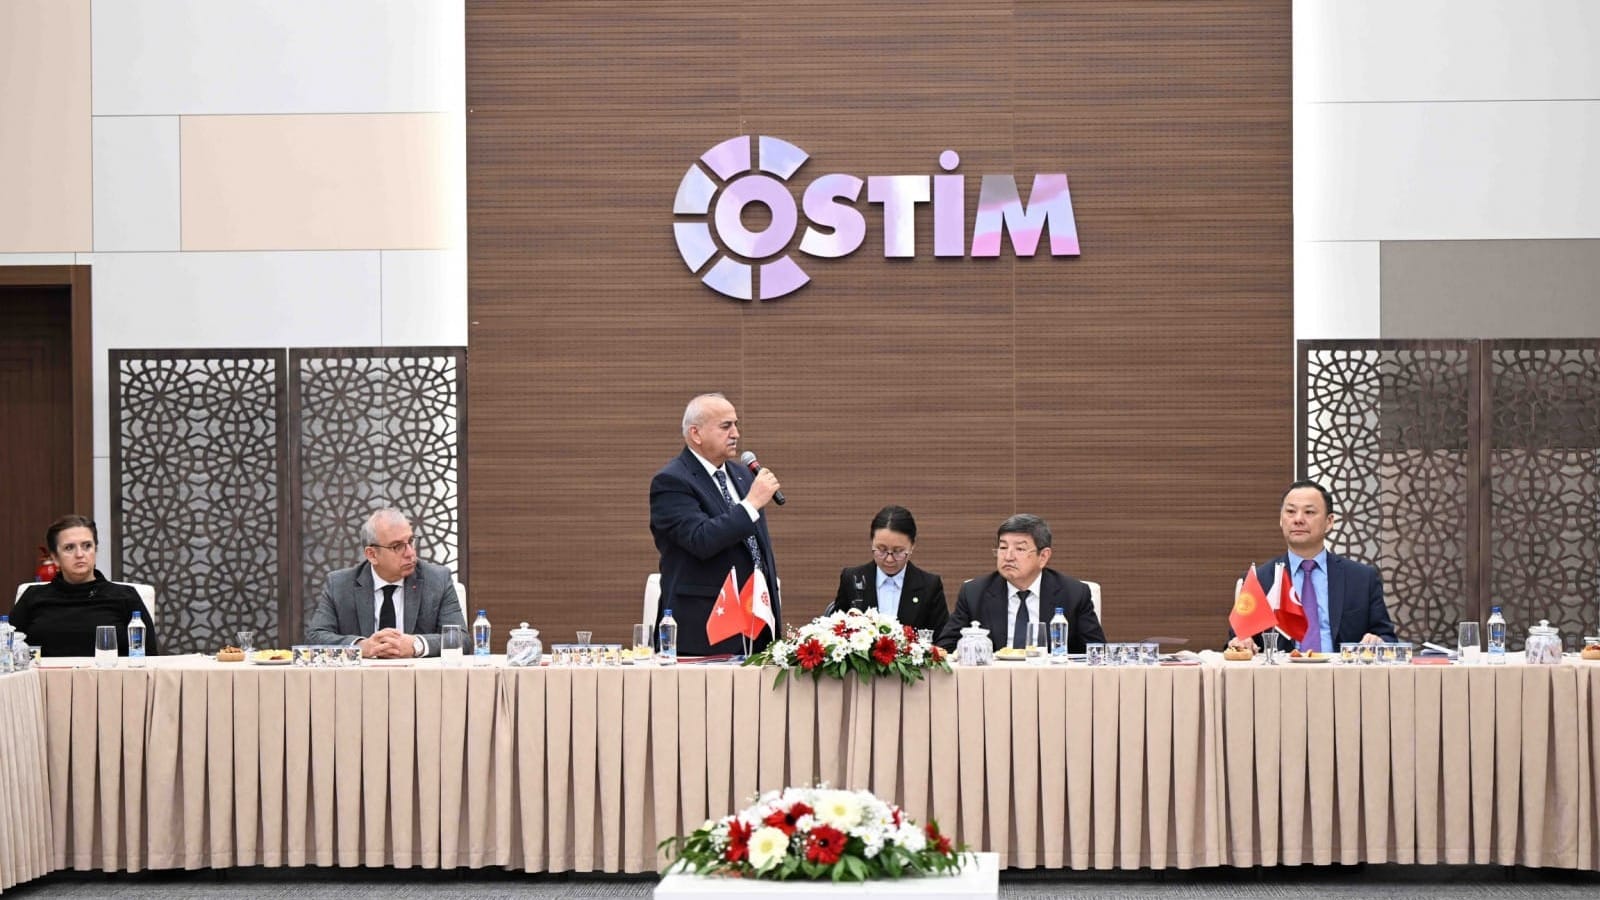 В Кыргызстане хотят создать промышленные зоны, наподобие турецкой OSTIM